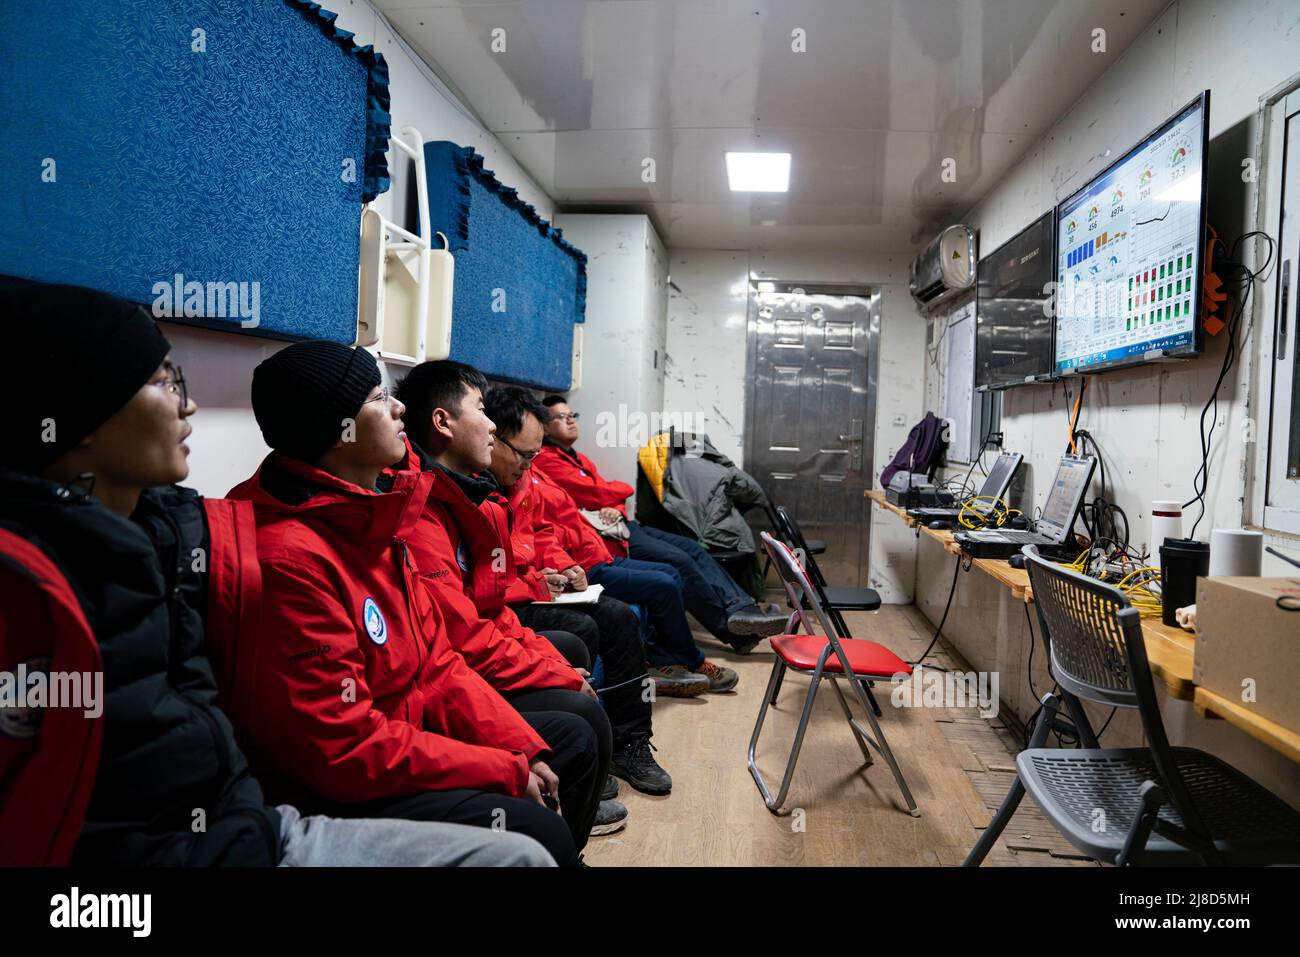 (220515) -- CAMP DE BASE DU MONT QOMOLANGMA, 15 mai 2022 (Xinhua) -- des membres de la recherche scientifique surveillent les statistiques en temps réel pendant l'ascension du navire à air flottant 'Jimu No.1' de type III dans le canton de Zhaxizom, dans la région autonome du Tibet du sud-ouest de la Chine, 15 mai 2022. Selon son développeur, le navire flottant chinois, conçu pour l'observation de l'atmosphère, a atteint dimanche une altitude record de 9 032 mètres dans la région autonome du Tibet. Développé par l'Institut de recherche sur l'information aérospatiale de l'Académie chinoise des sciences (cas), le navire flottant 'Jimu No.1 Banque D'Images